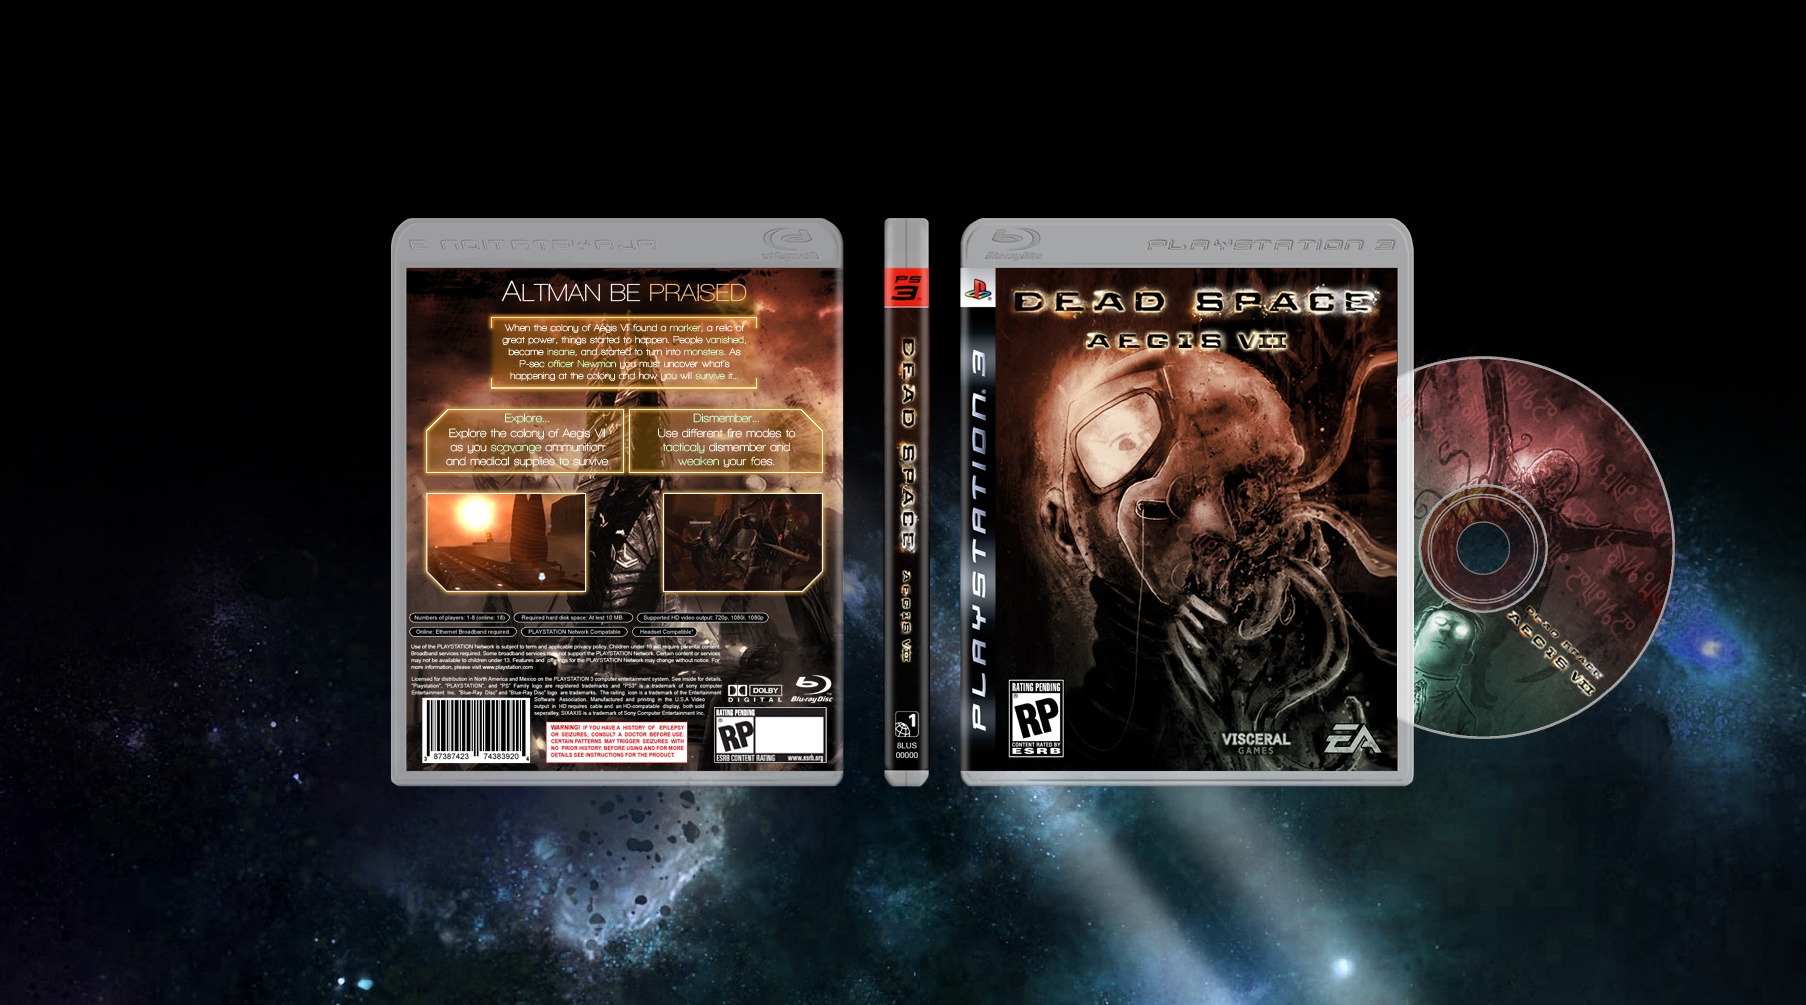 Dead Space Aegis VII box cover